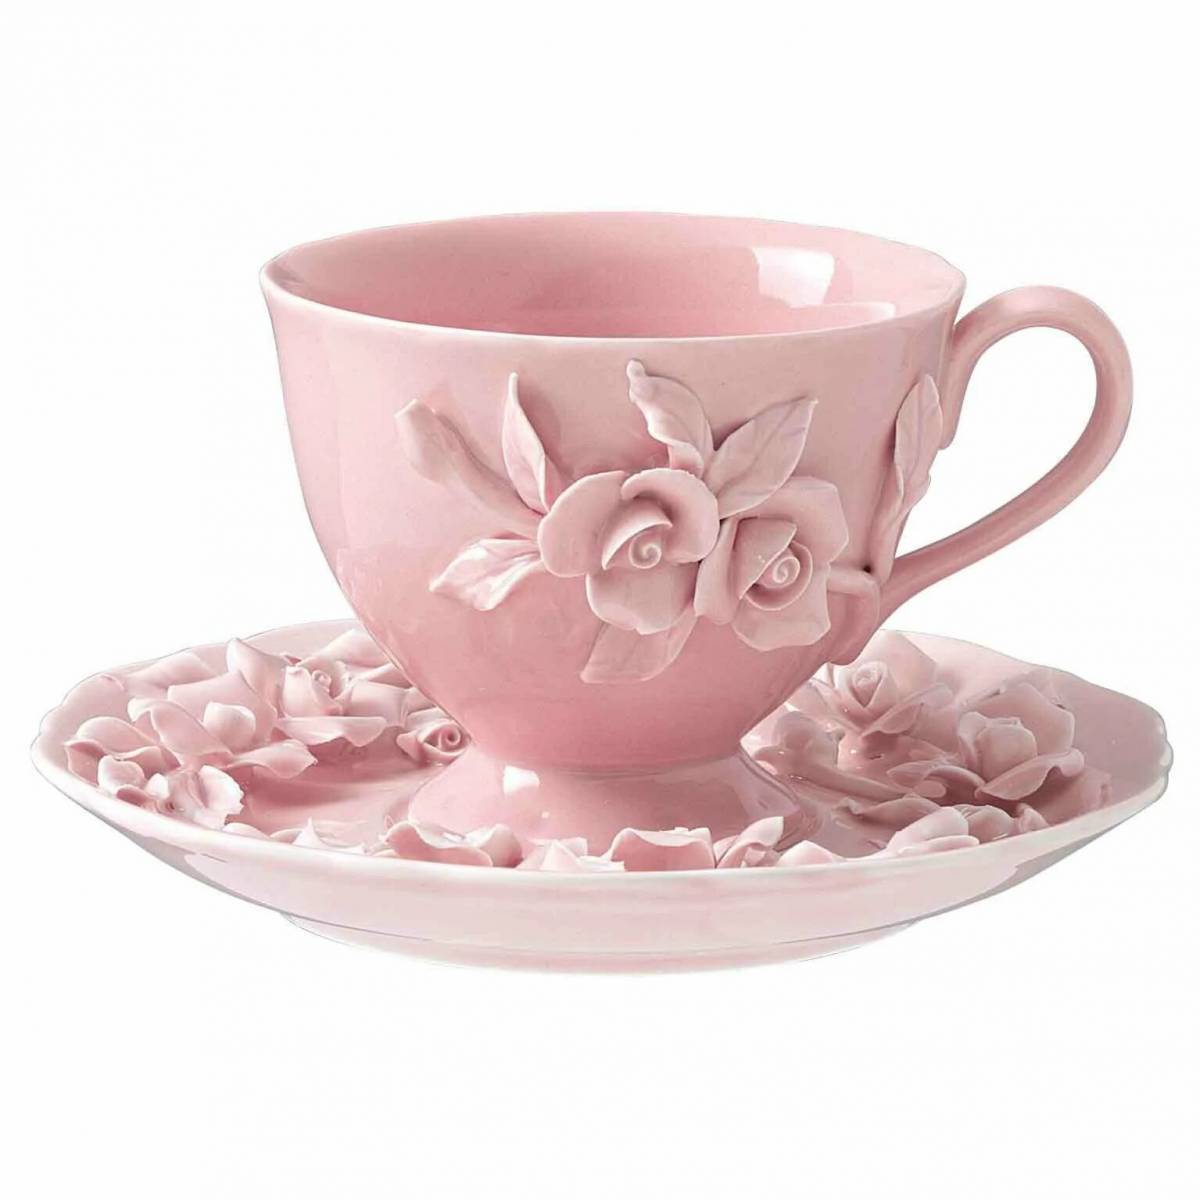 Красивая чайная пара. Cup Saucer чайный сервиз. Фарфор Эден Пинк. Красивые чашки.